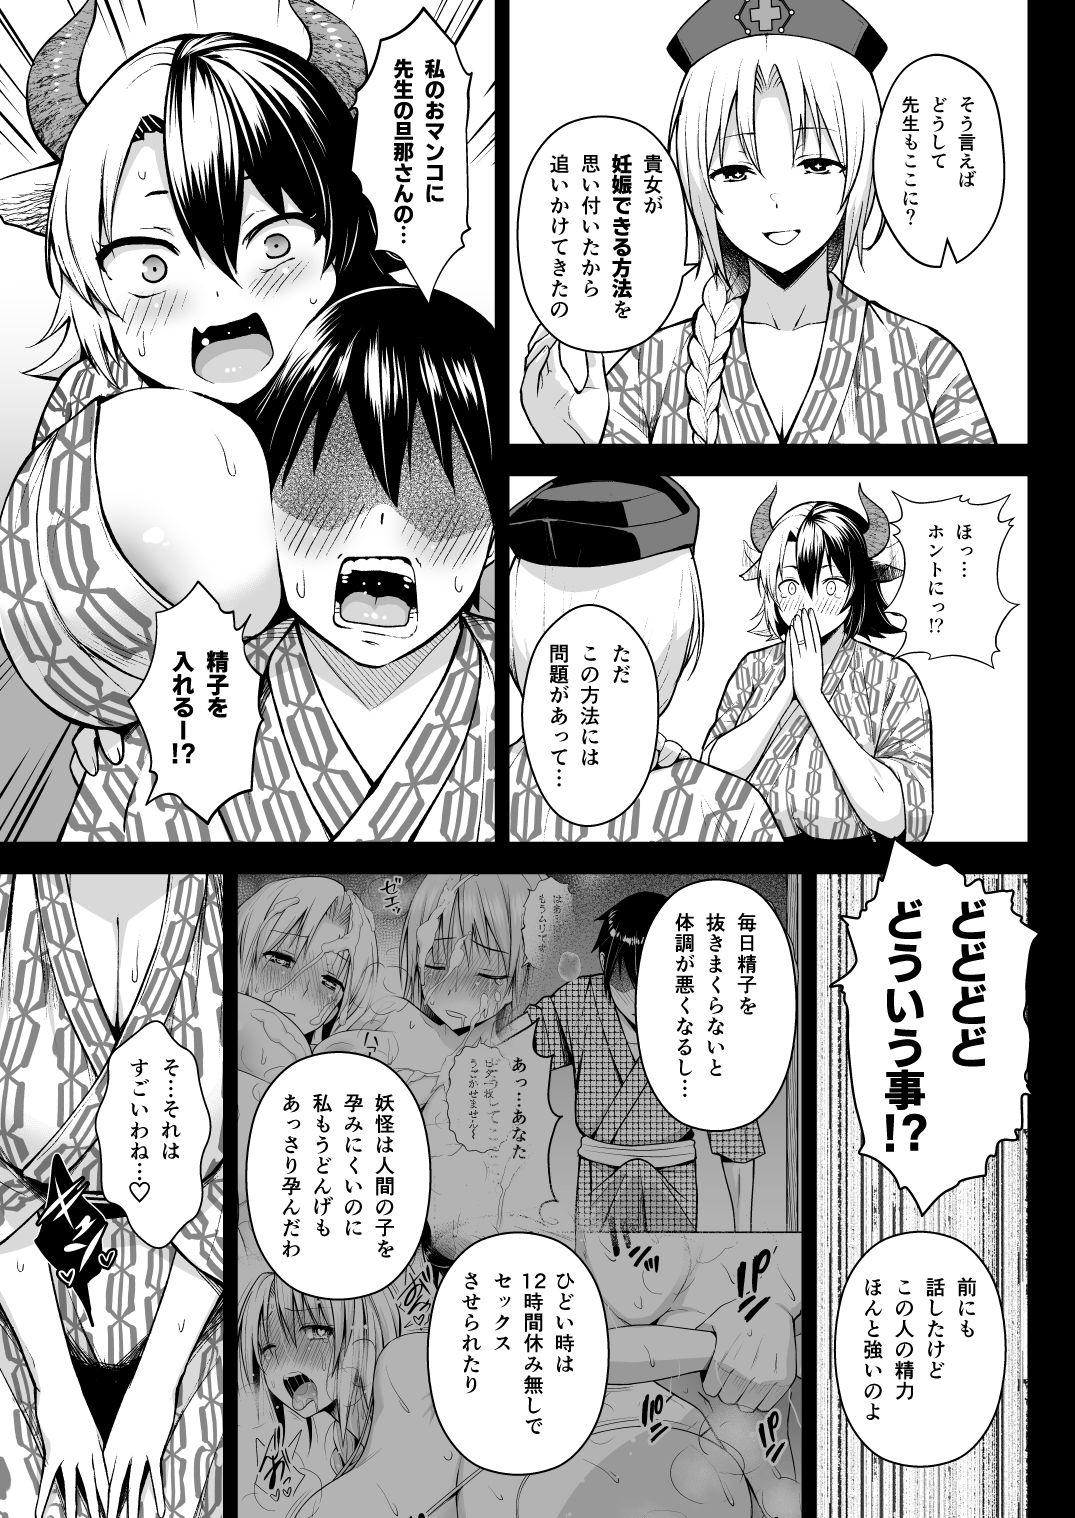 Storyline Oku-san no Oppai ga Dekasugiru noga Warui! 5 - Touhou project Ass - Page 4